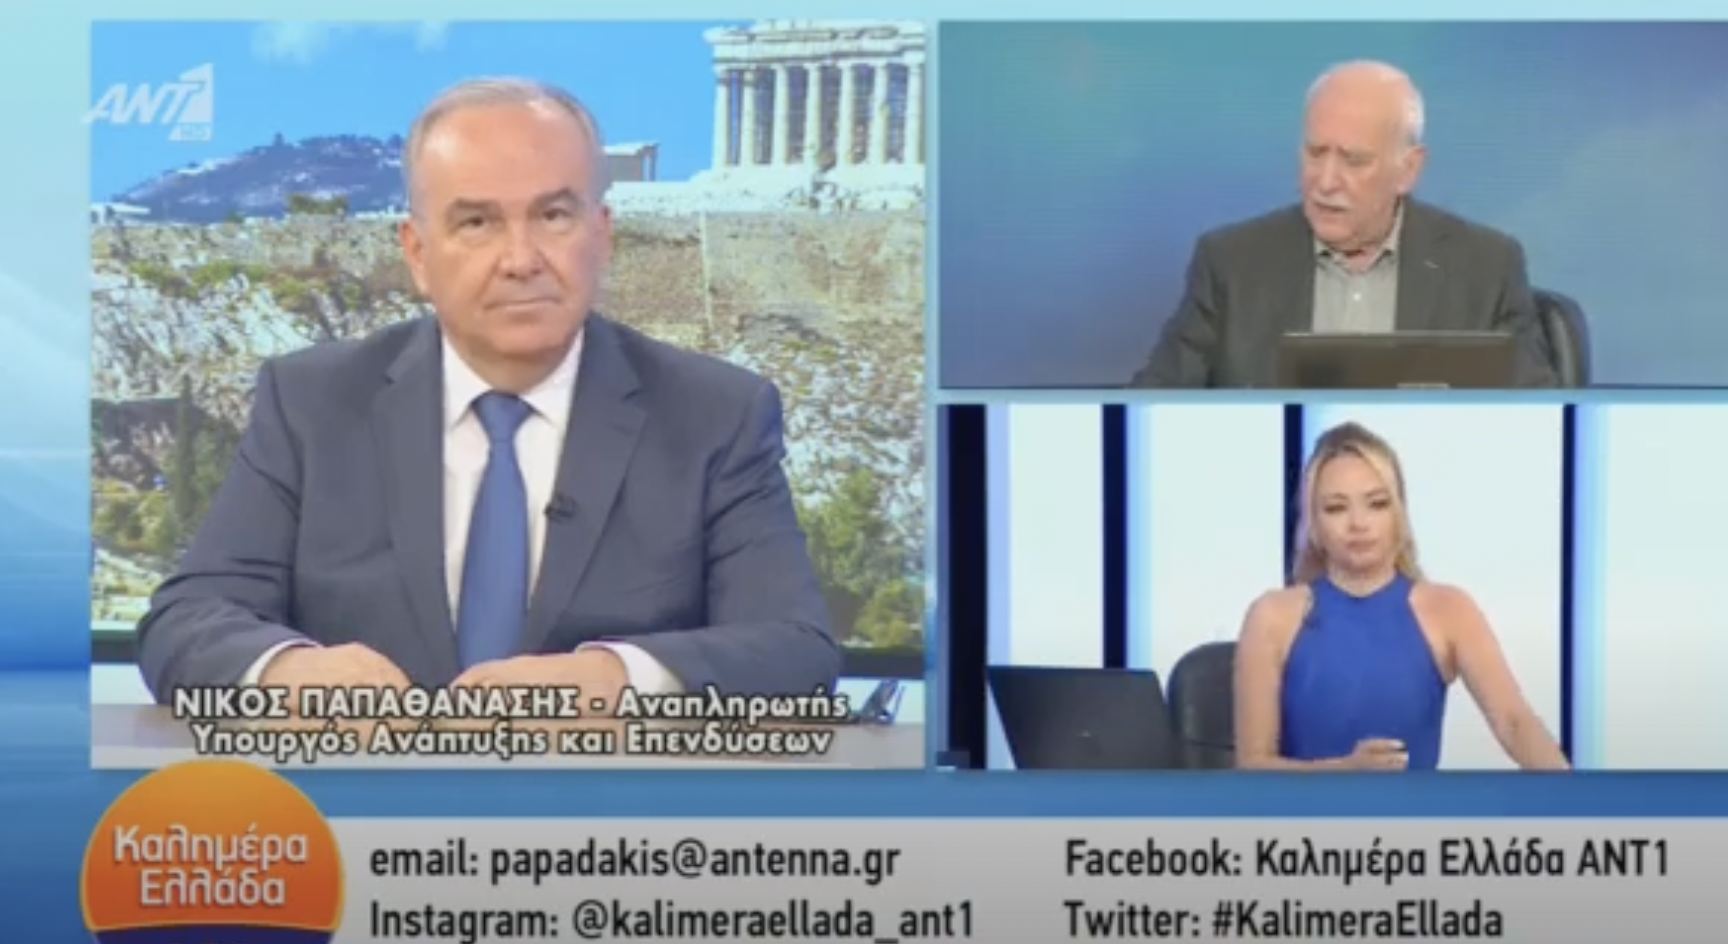 Στην εκπομπή “Καλημέρα Ελλάδα” του ΑΝΤ1 με τον Γιώργο Παπαδάκη